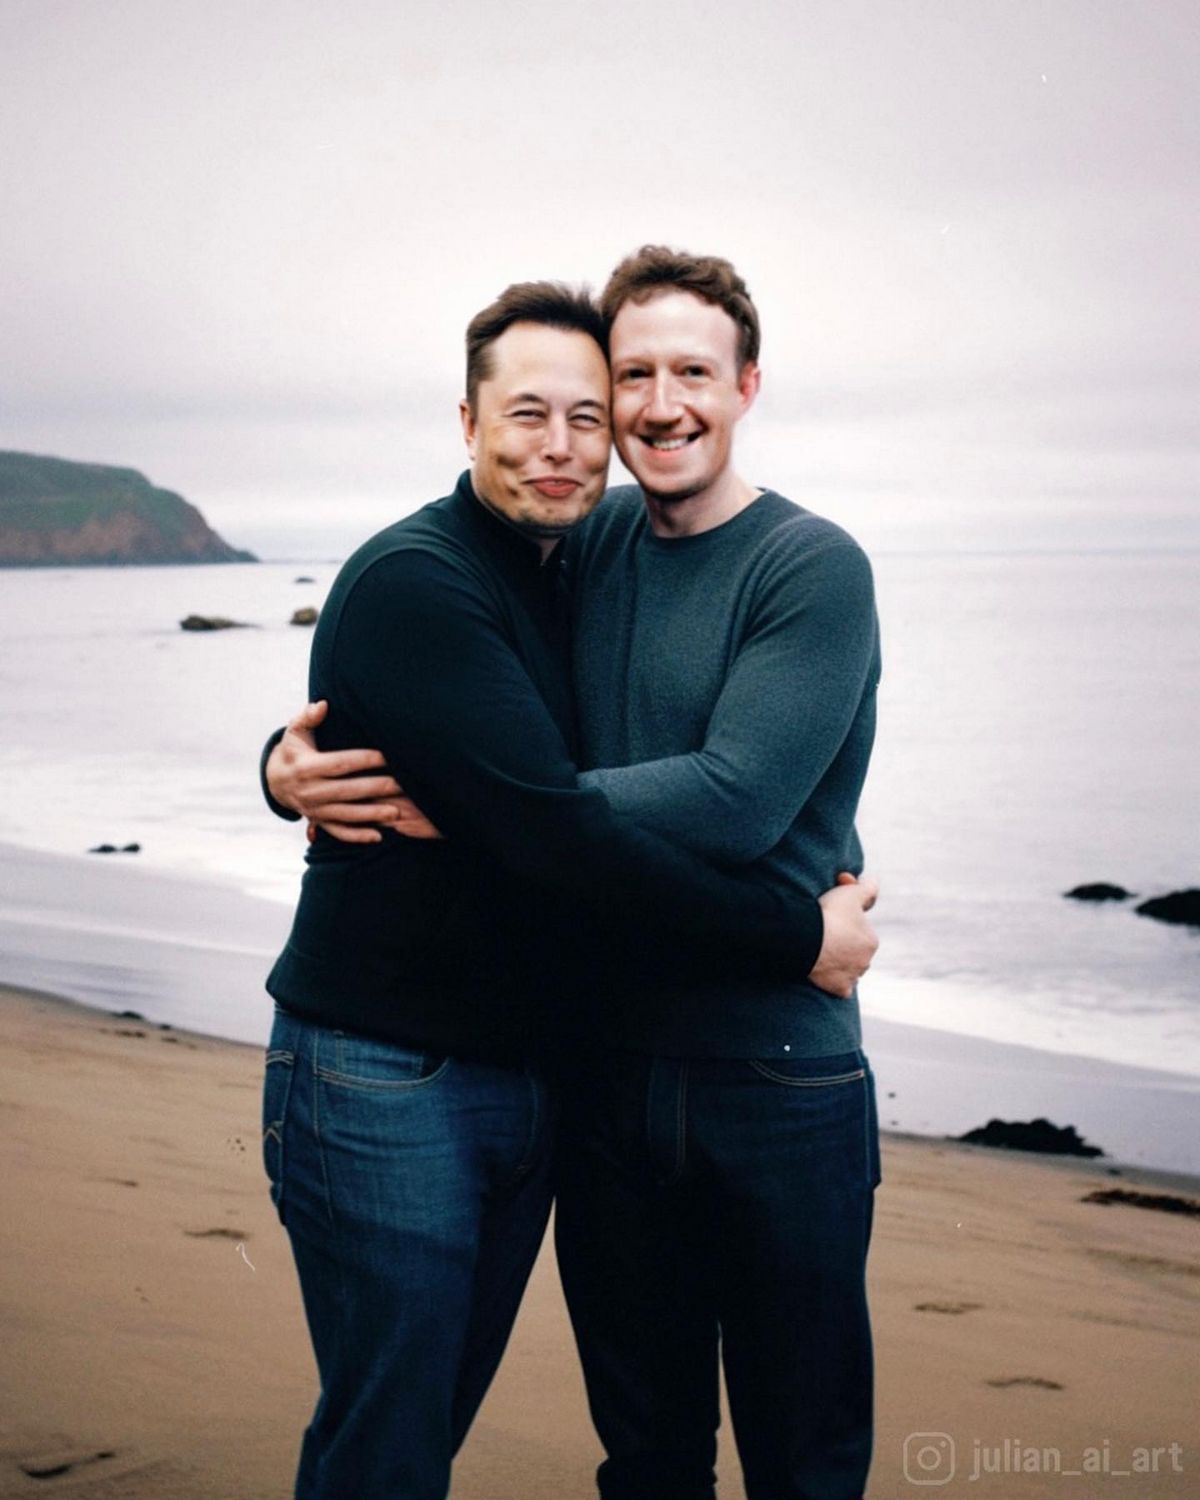 L’une des images générées par l’IA montre Elon Musk et Mark Zuckerberg s’étreignant affectueusement à la plage.